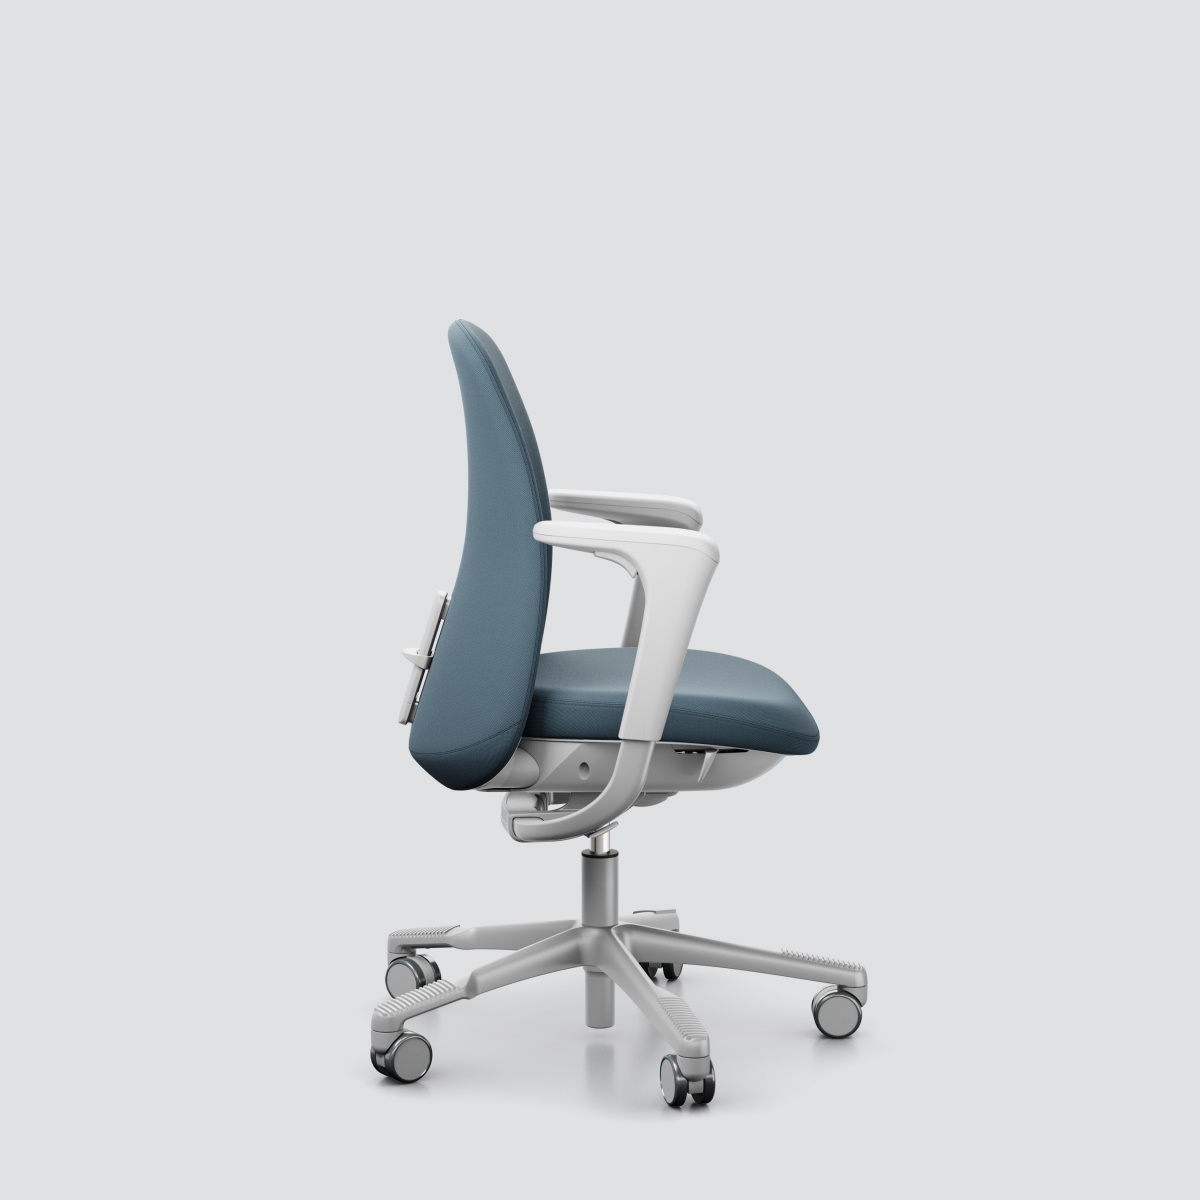 Office chair H&#197;G SoFi 7200, silver base, fog blue